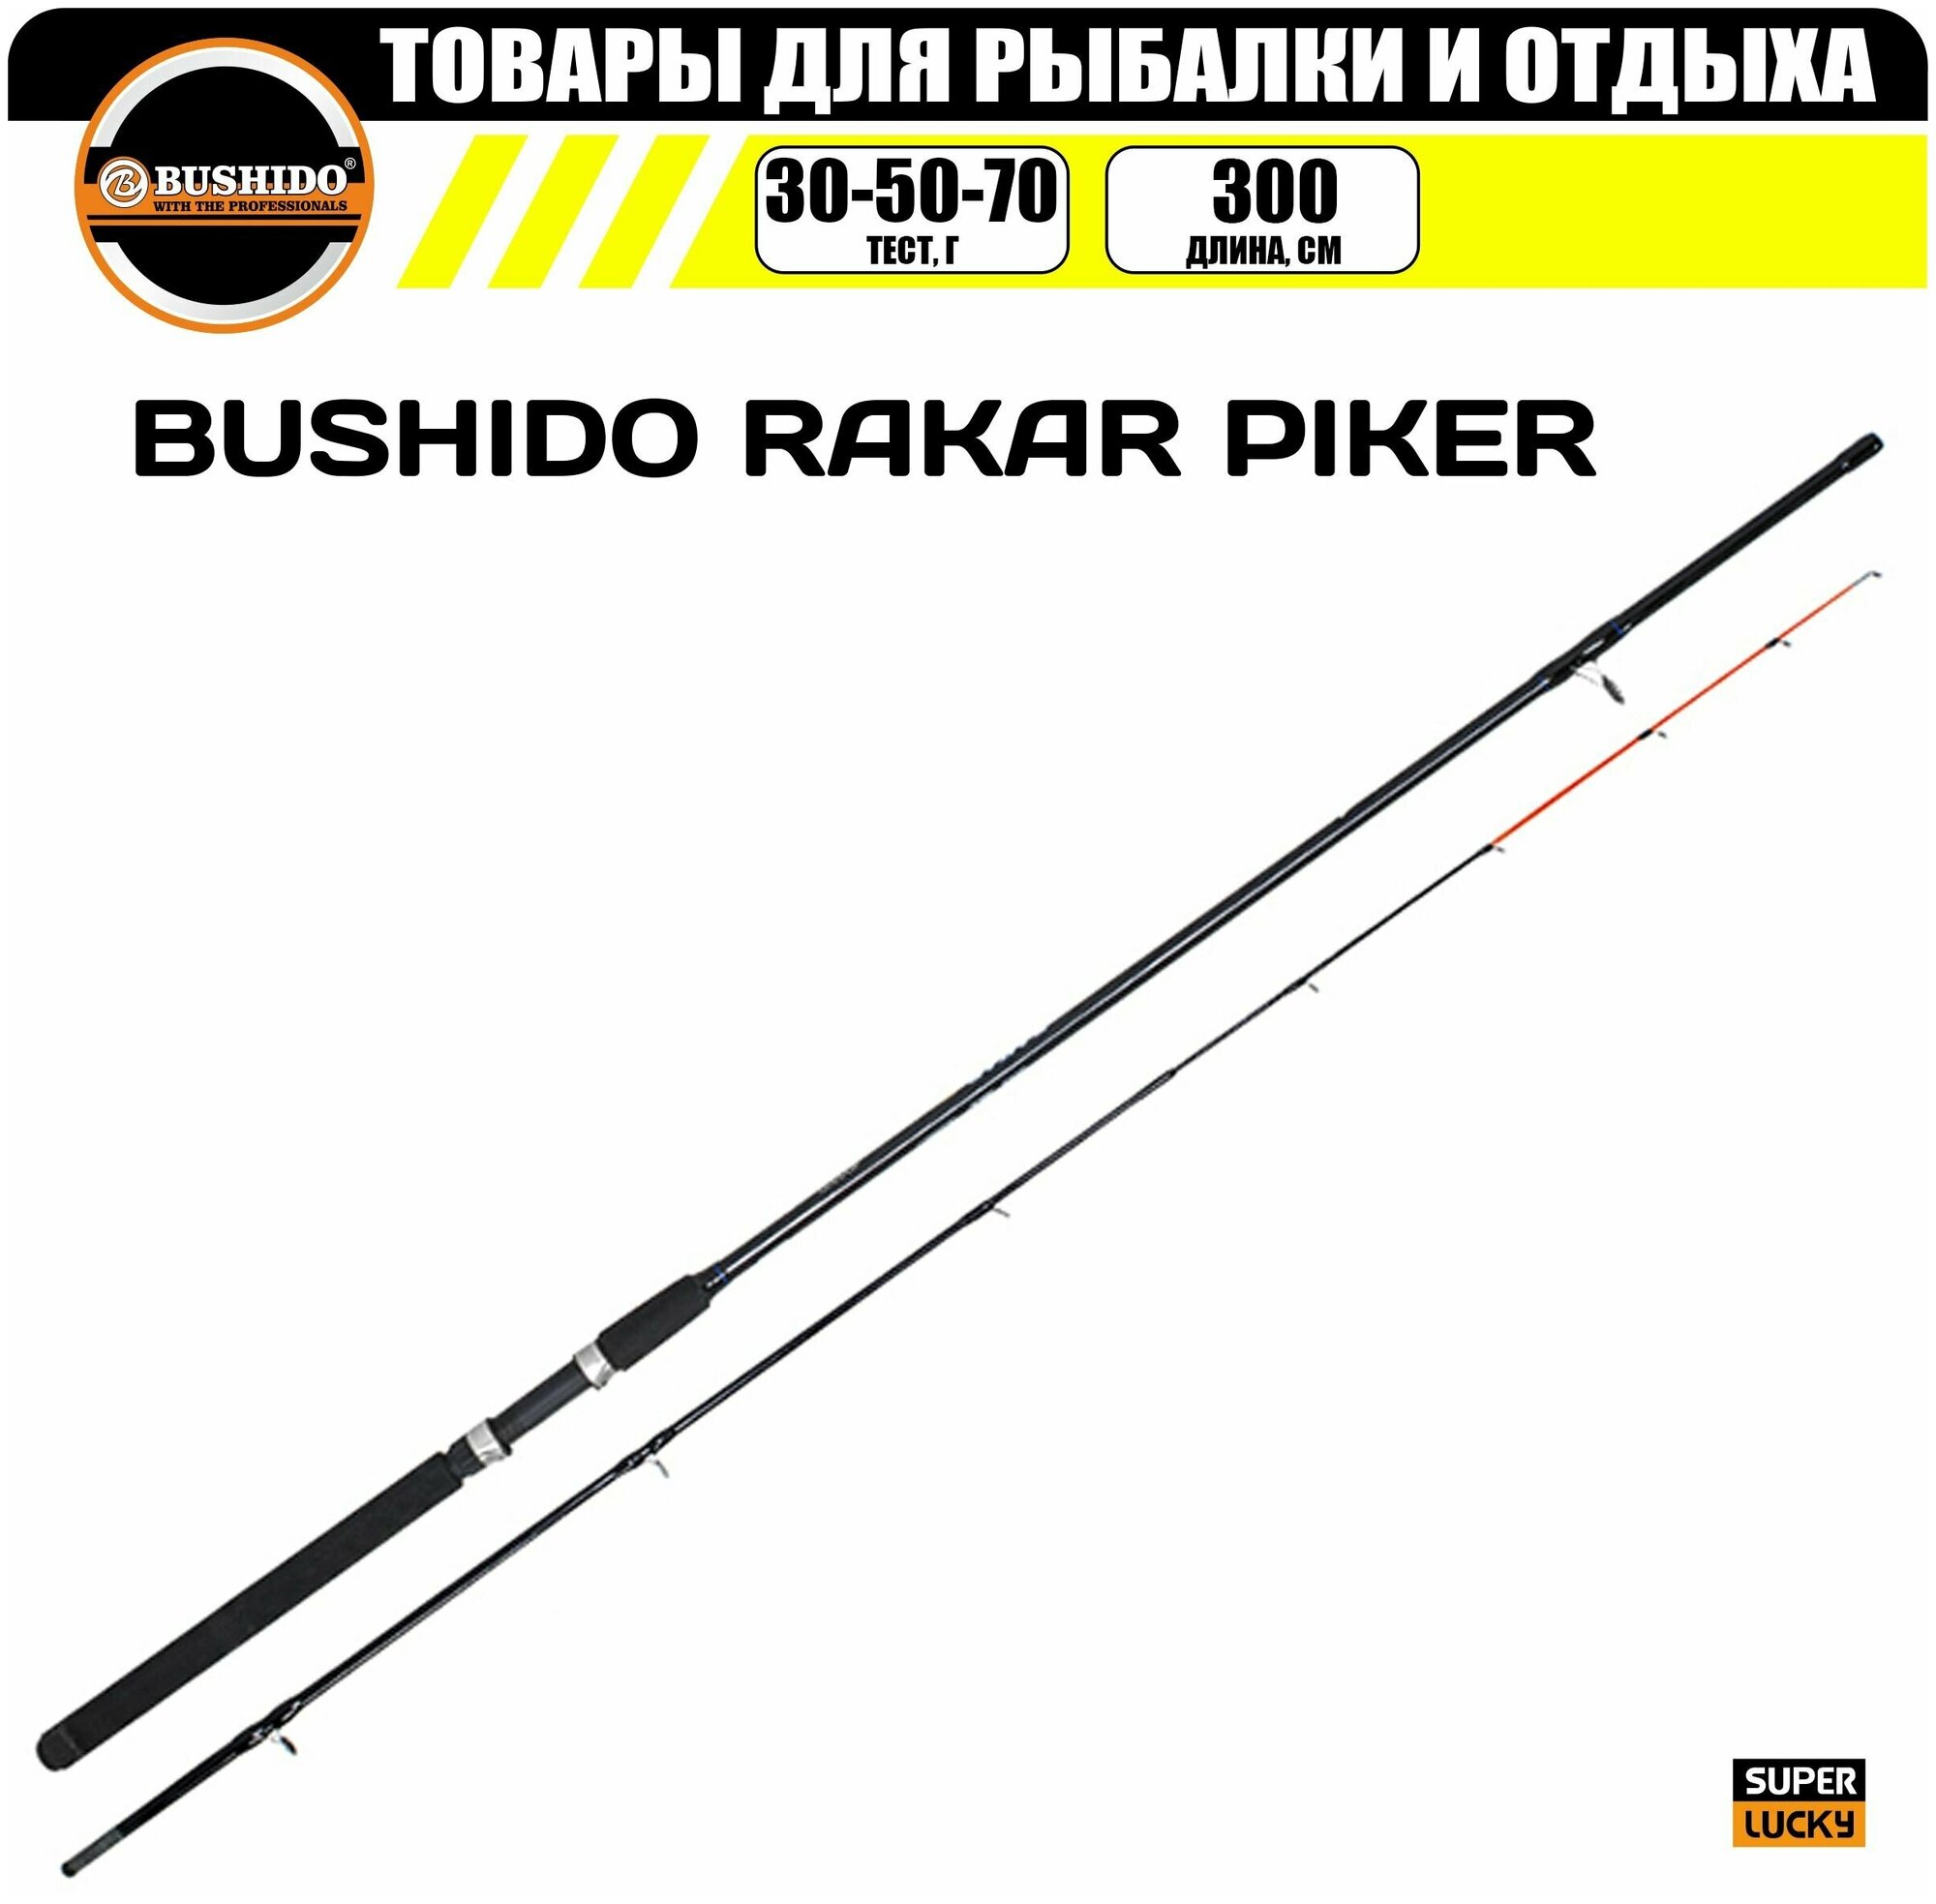 Удилище пикерное RAKAR PIKER BUSHIDO 3.0 метра (30-50-70гр) для рыбалки рыболовное средний (regular) строй штекерная конструкция